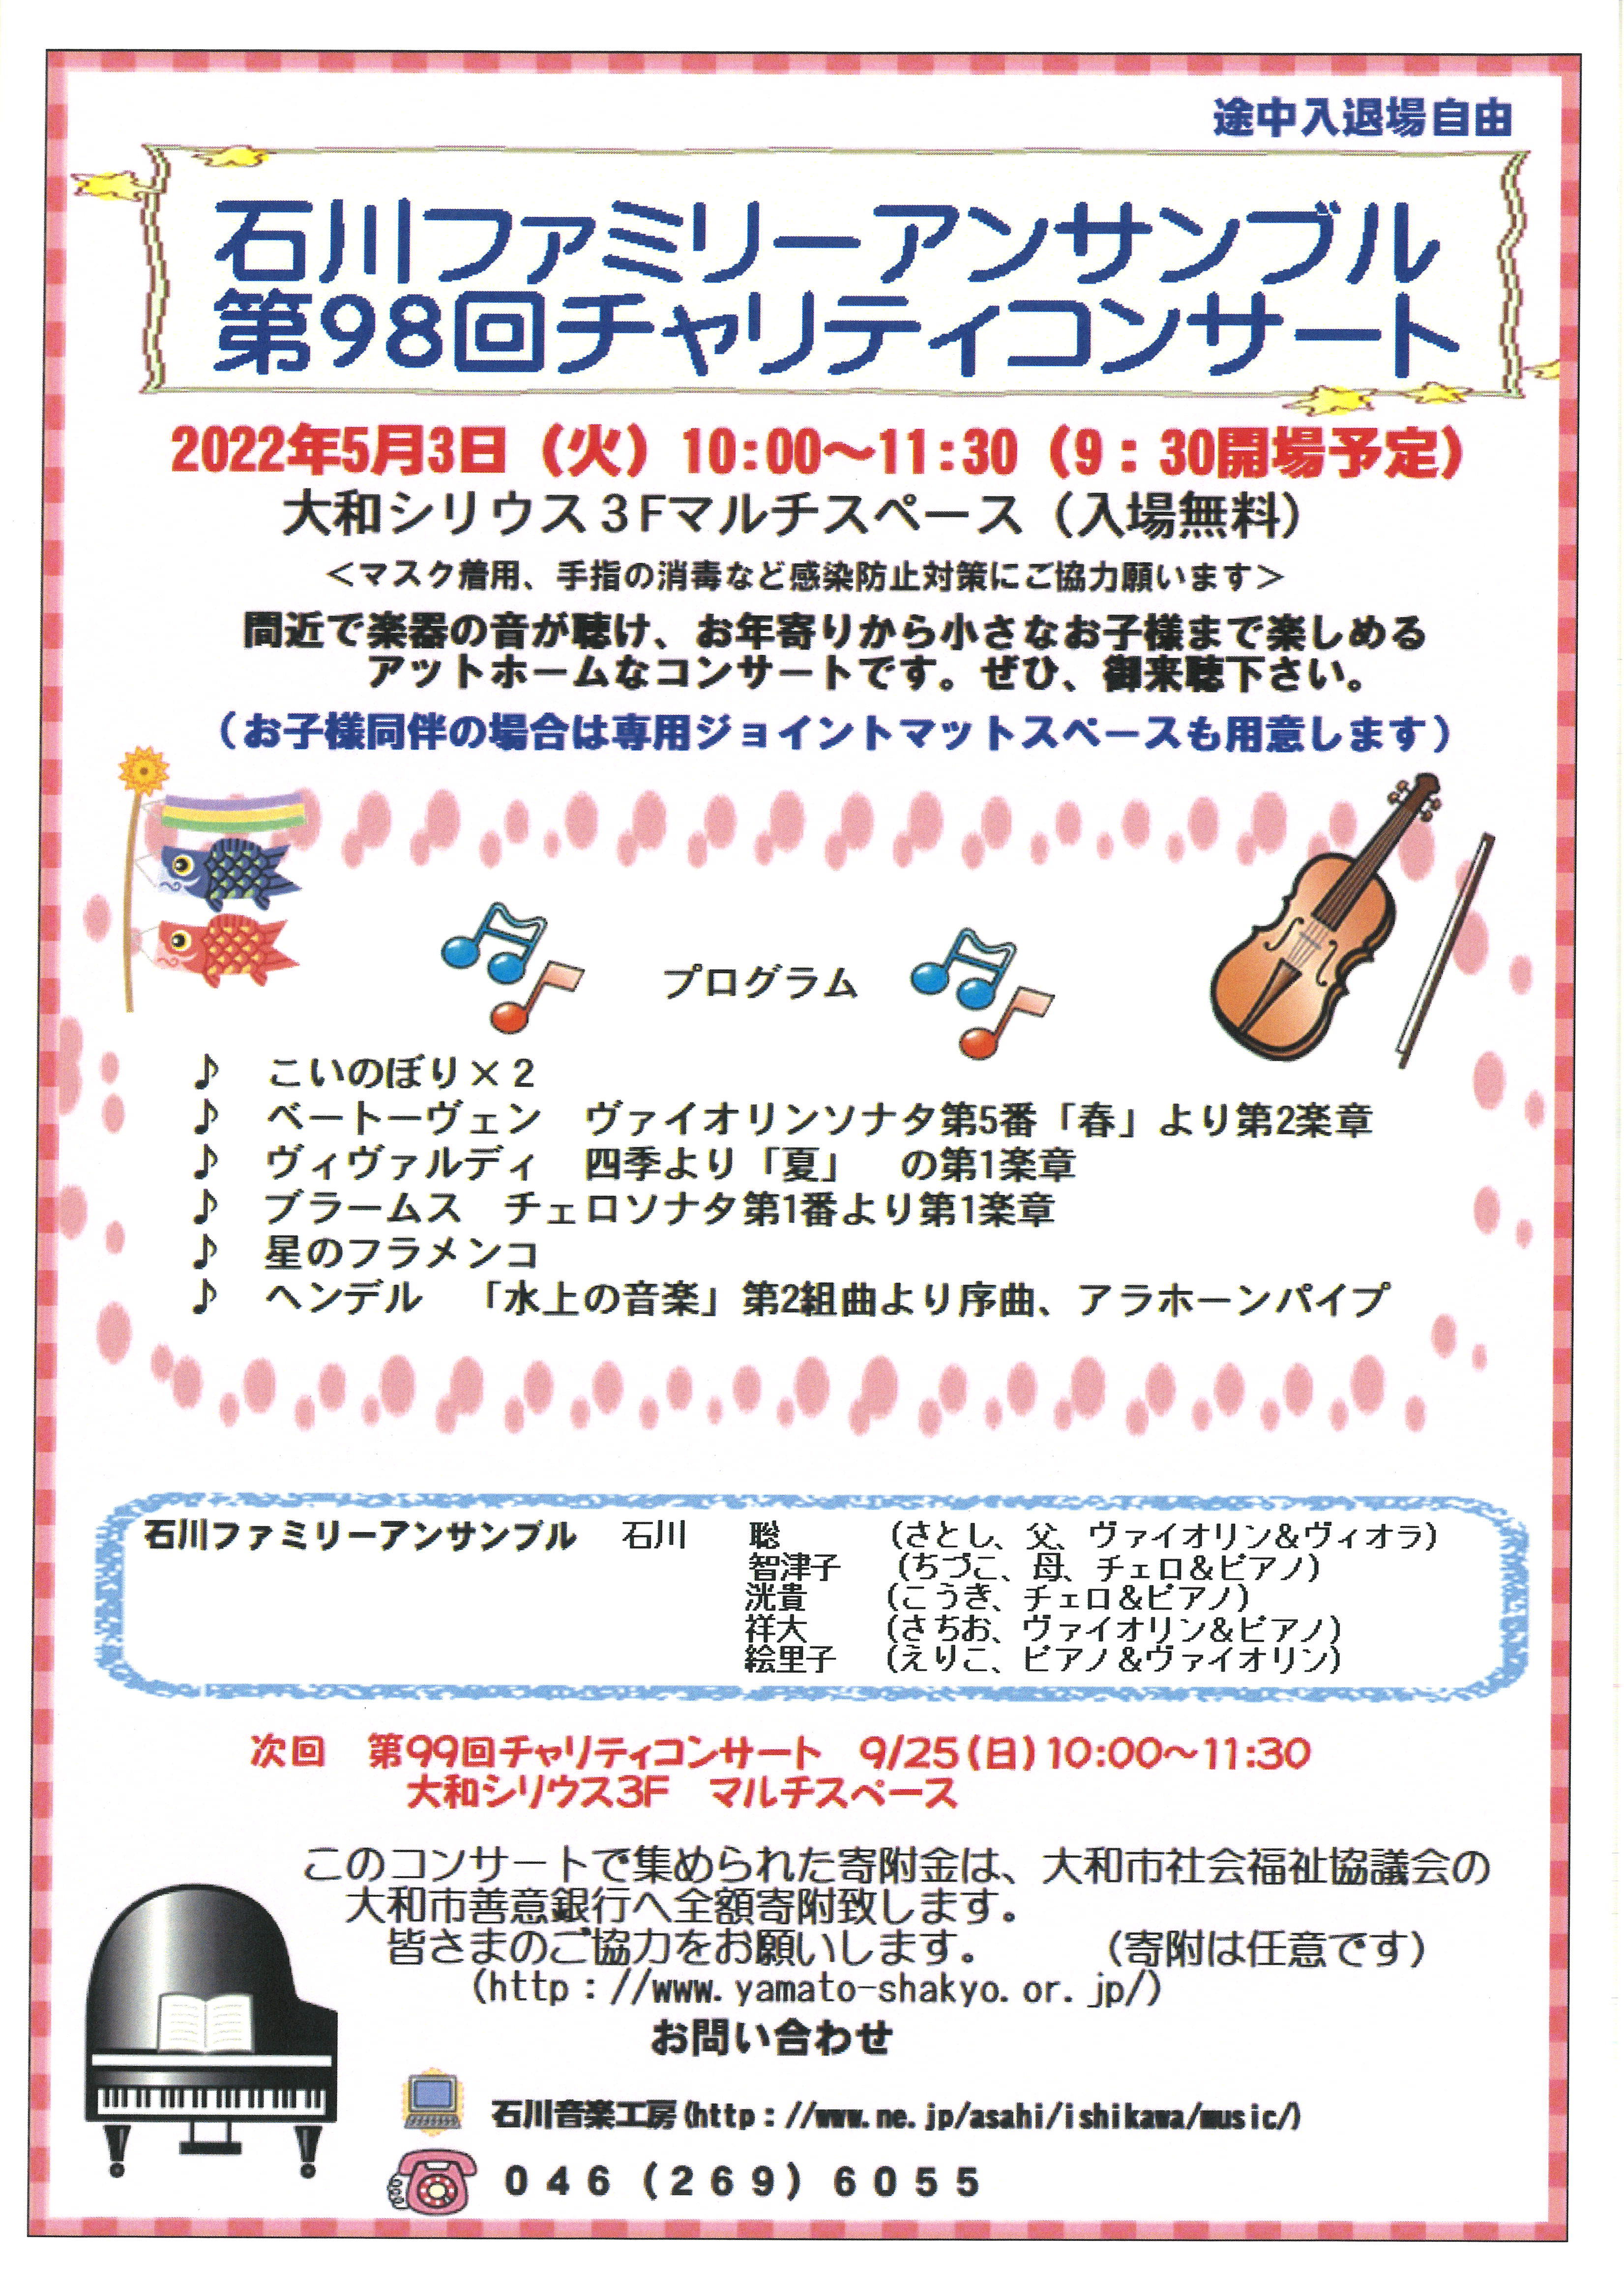 石川ファミリーアンサンブル第98回チャリティコンサート